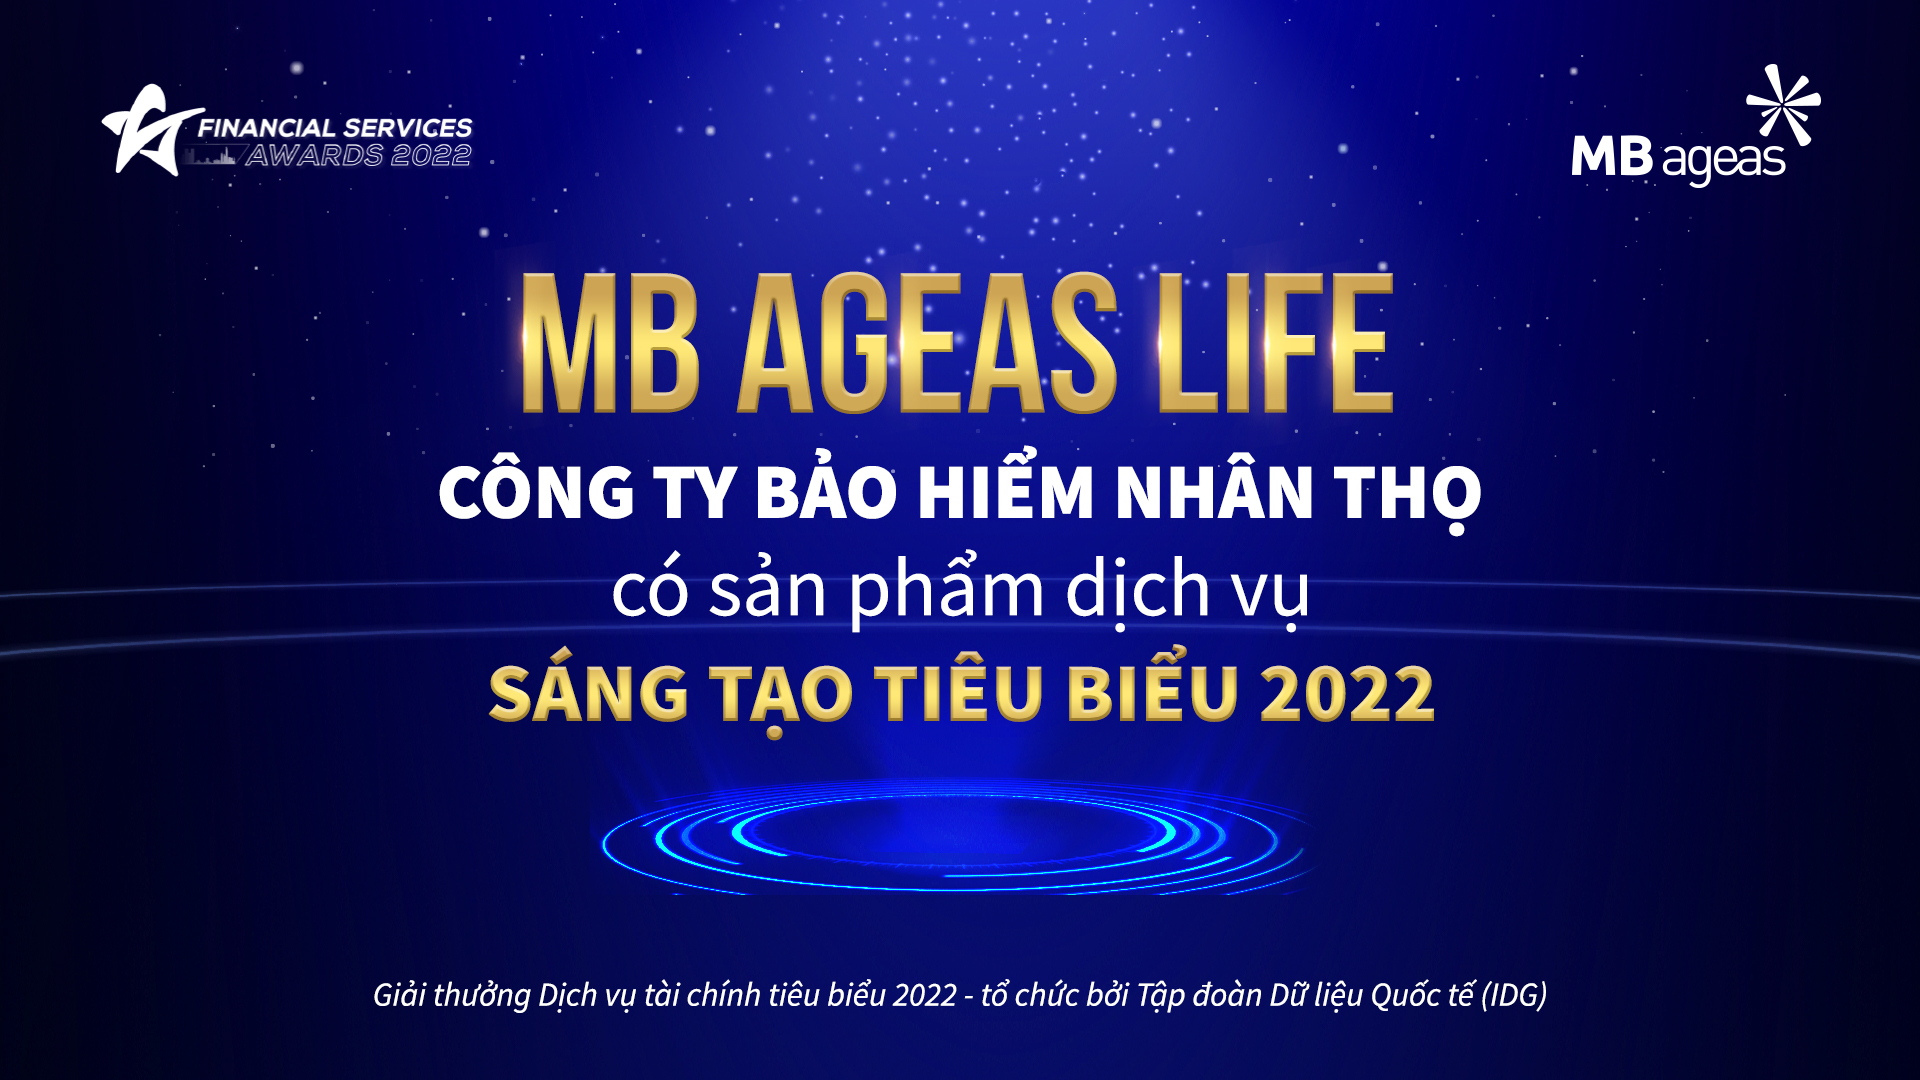 Đột phá với sản phẩm bảo hiểm số, MB Ageas Life nhận giải thưởng Dịch vụ Tài chính Việt Nam tiêu biểu 2022